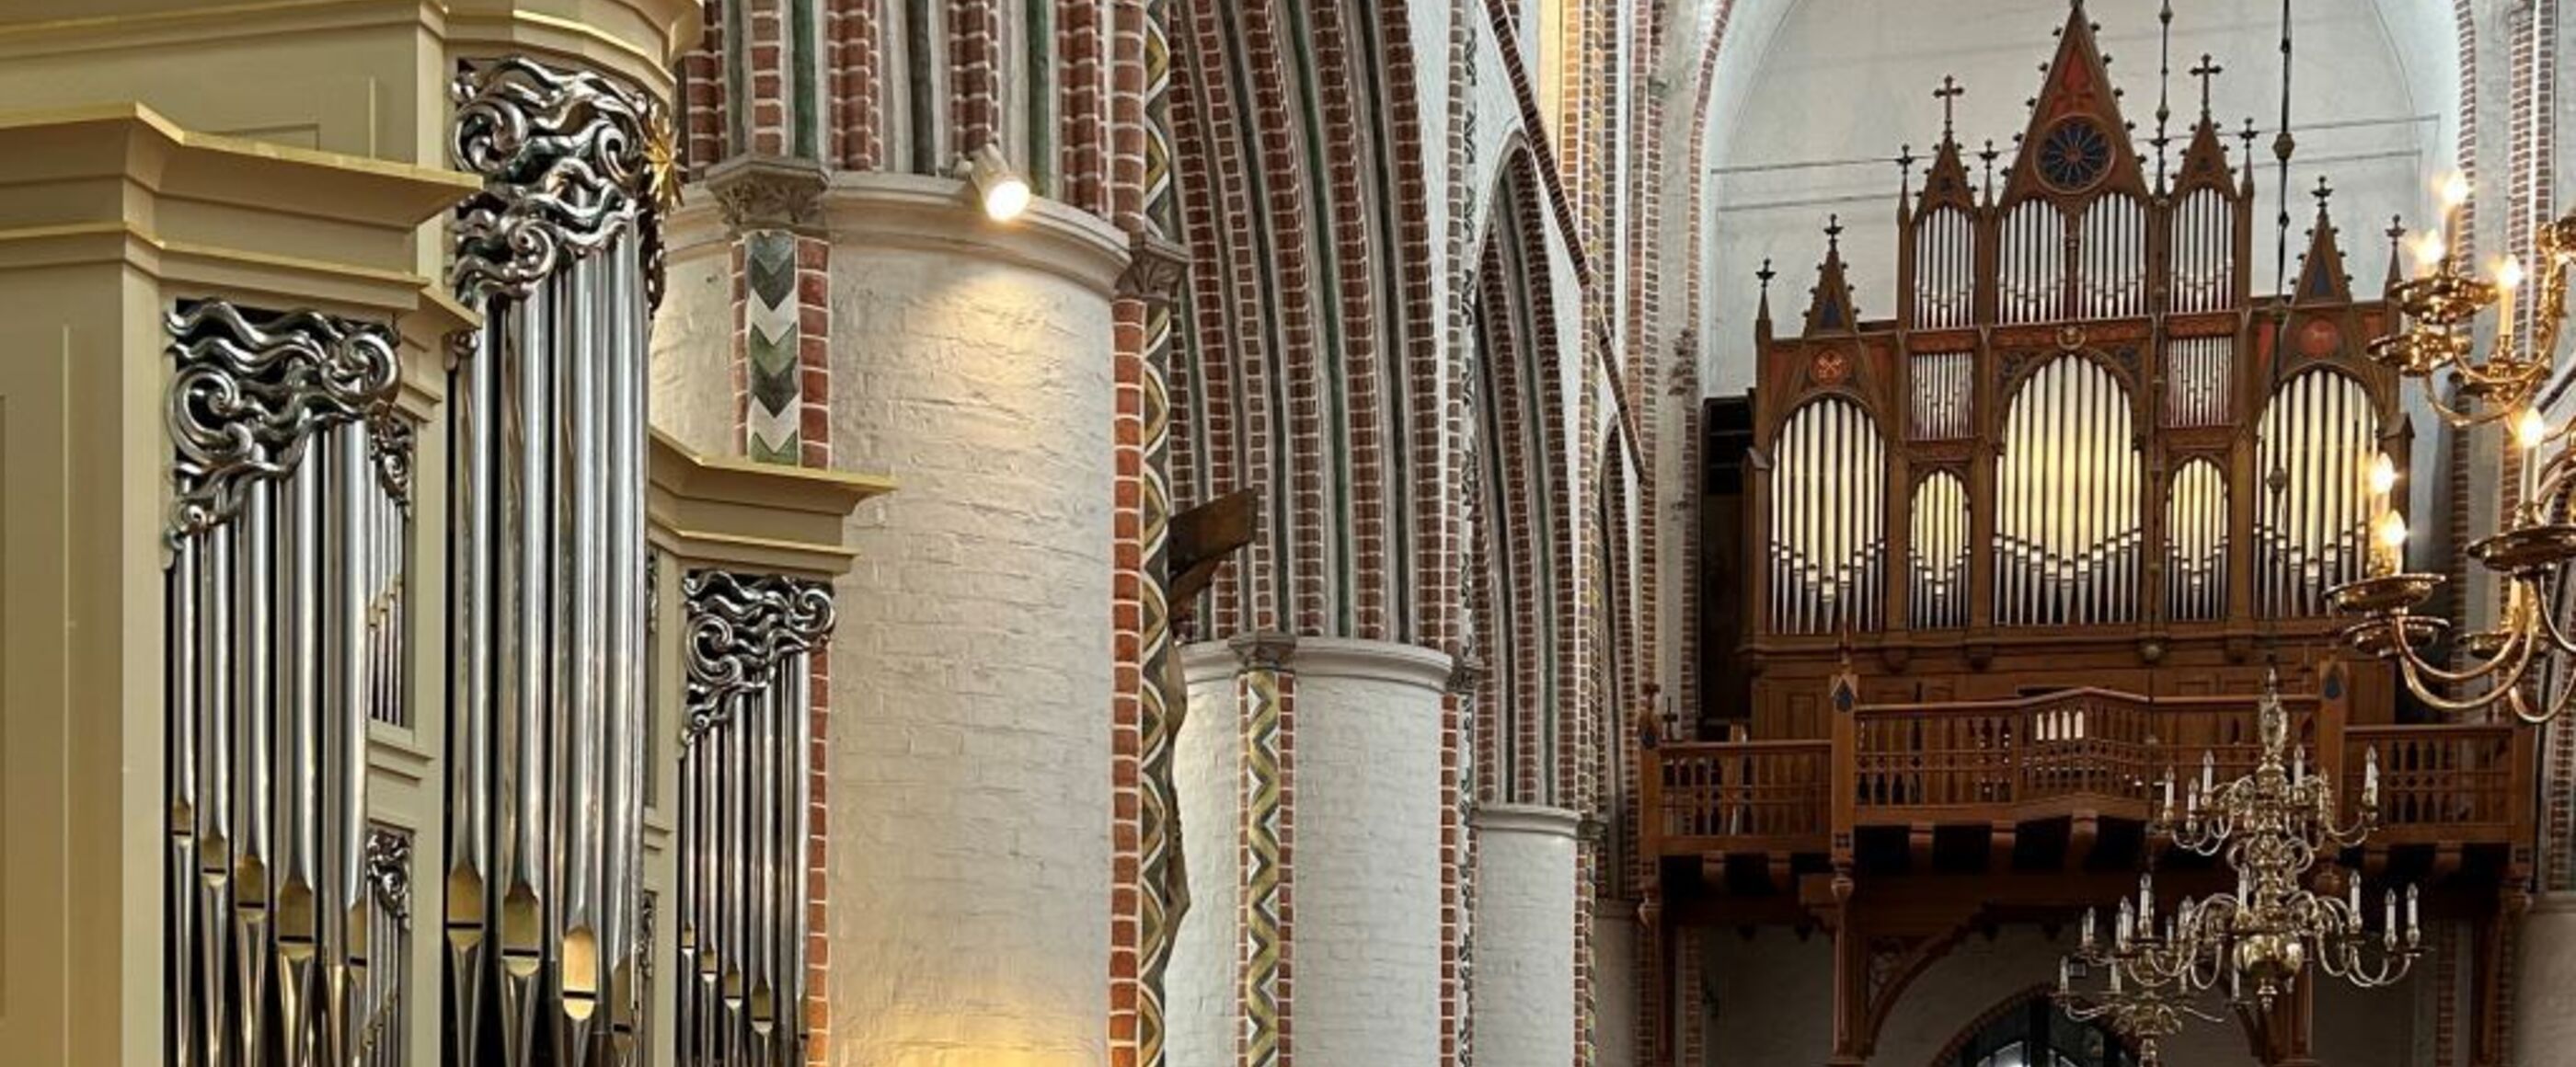 Zwei Orgeln in einer Kirche.